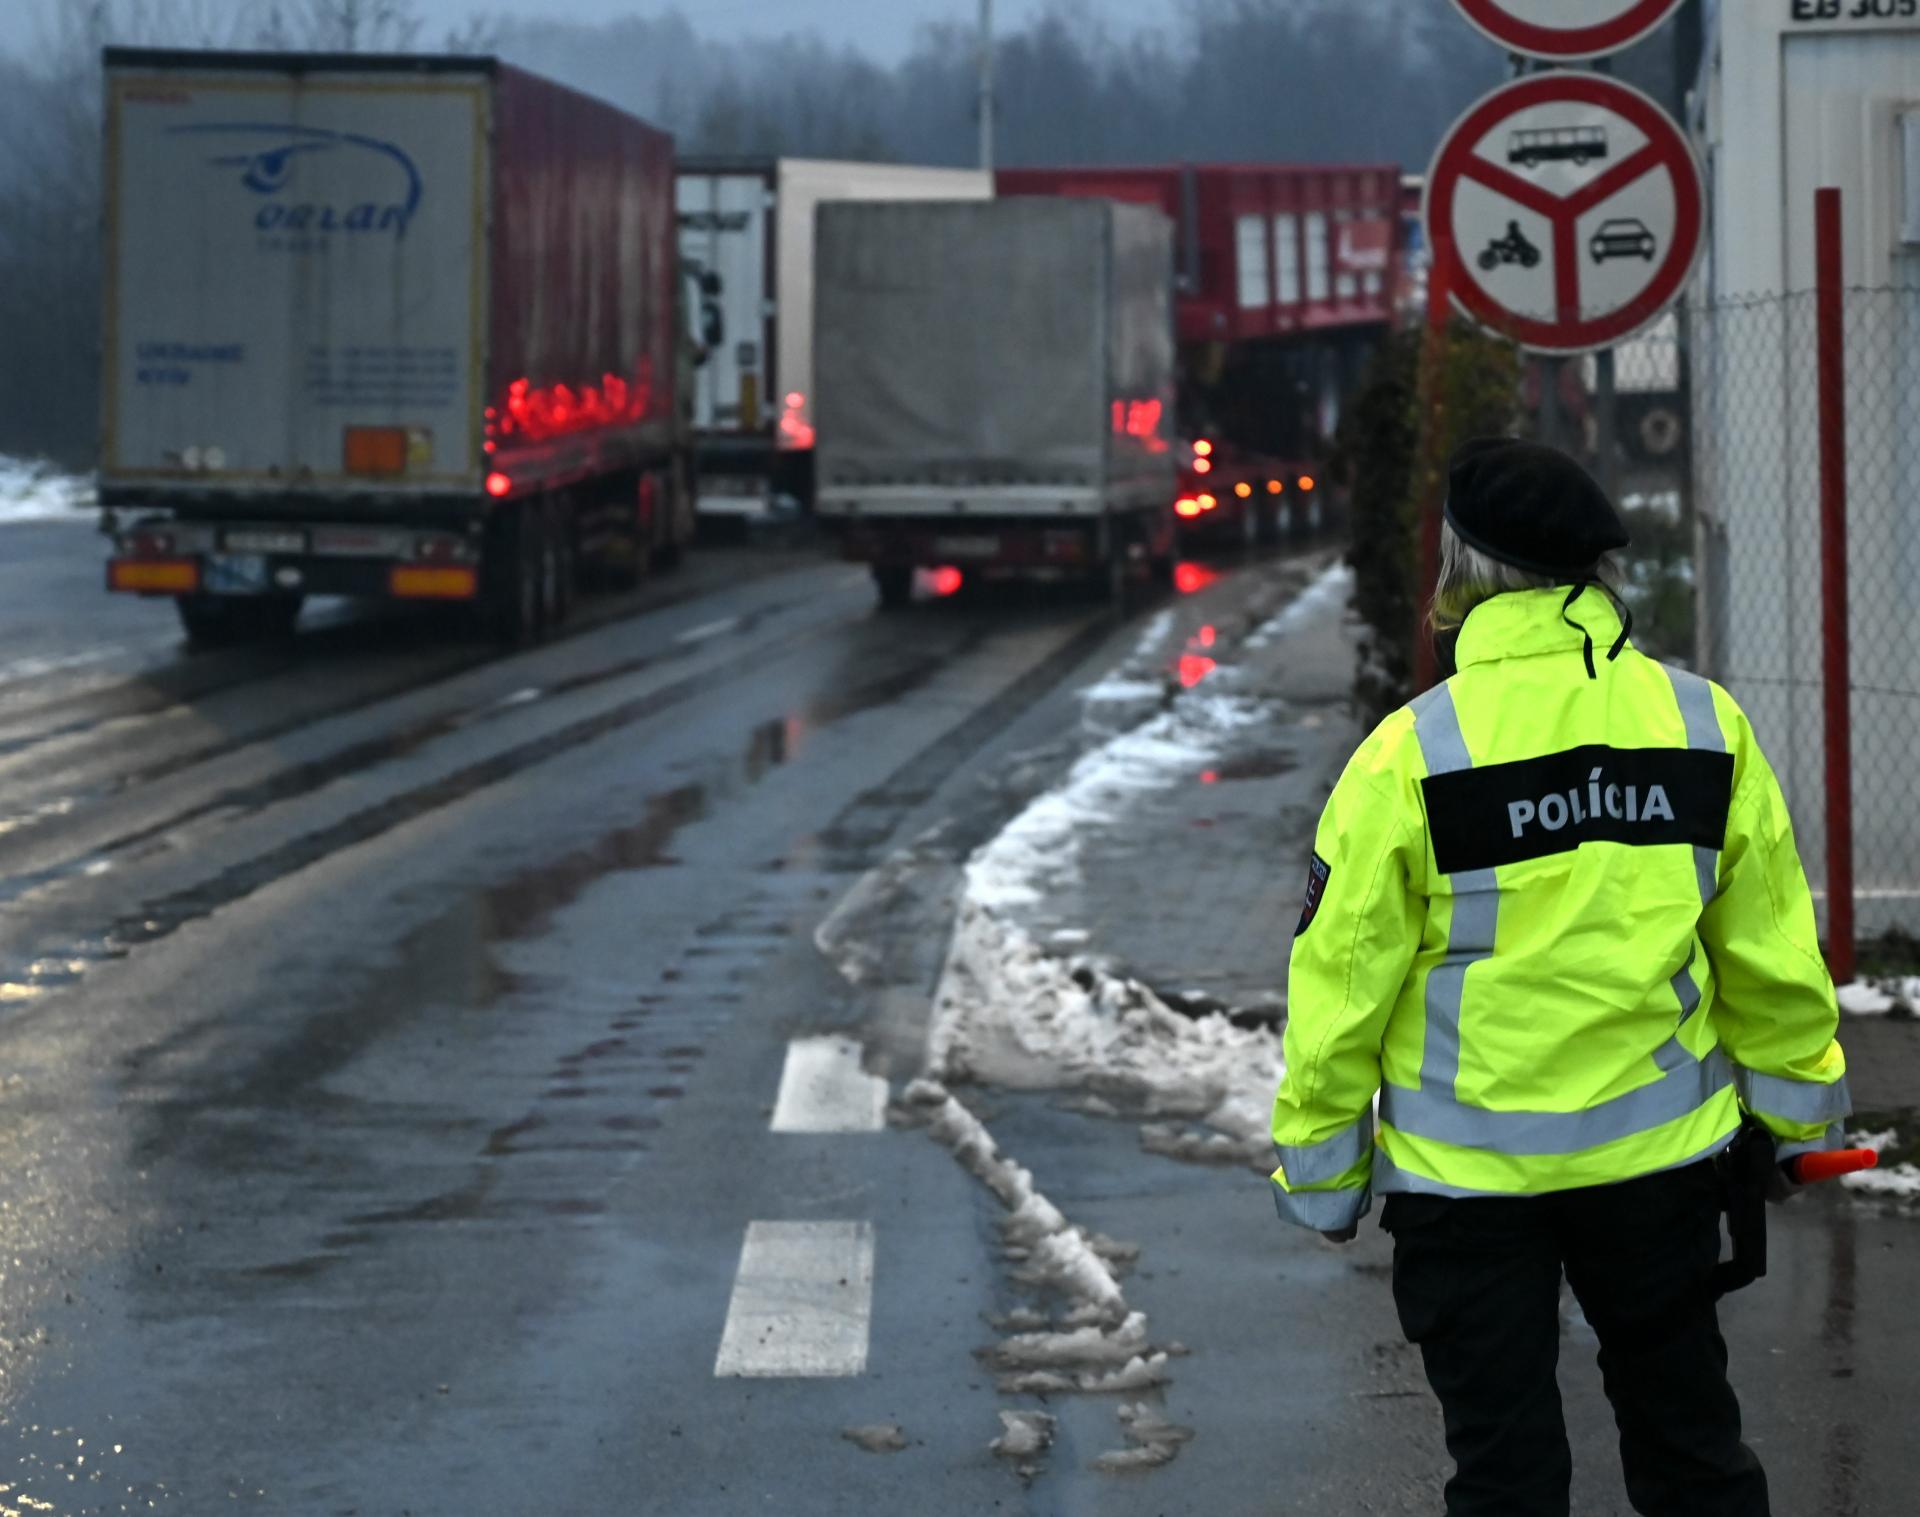 Dohoda medzi Európskou úniou a Ukrajinou o cestnej nákladnej doprave je zle nastavená, upozorňujú dopravcovia